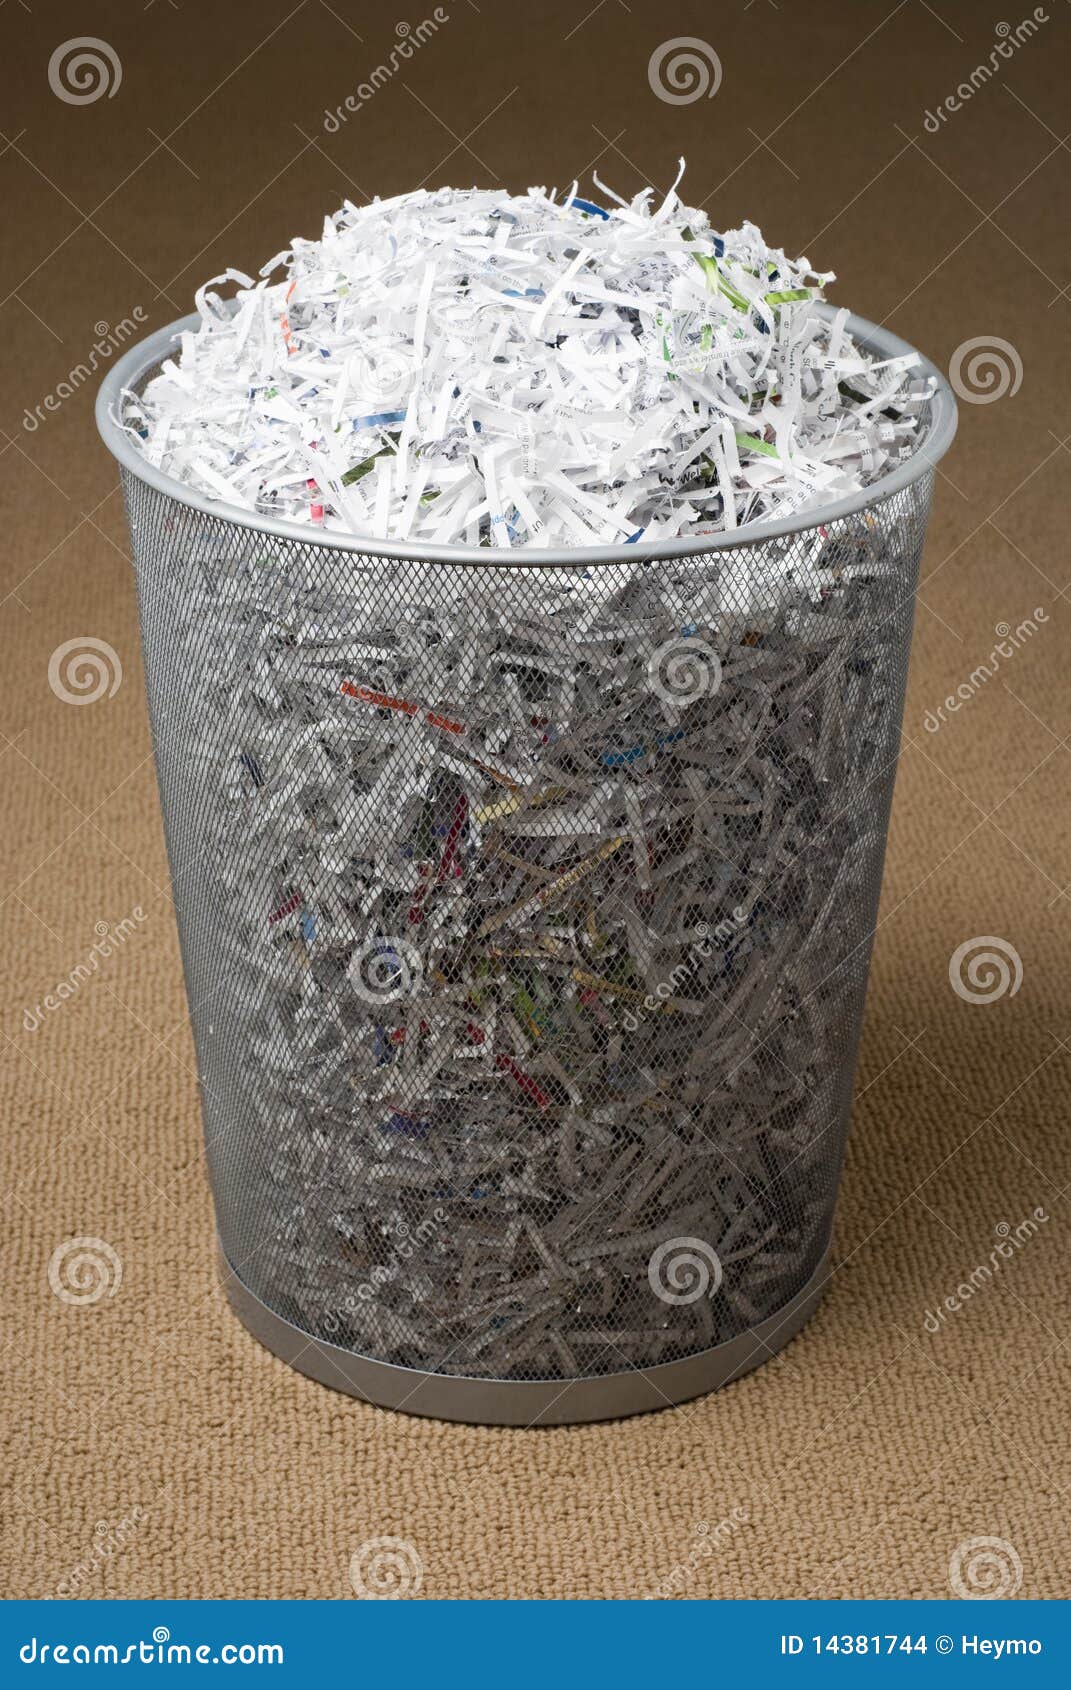 wastepaper basket filled with shredded paper